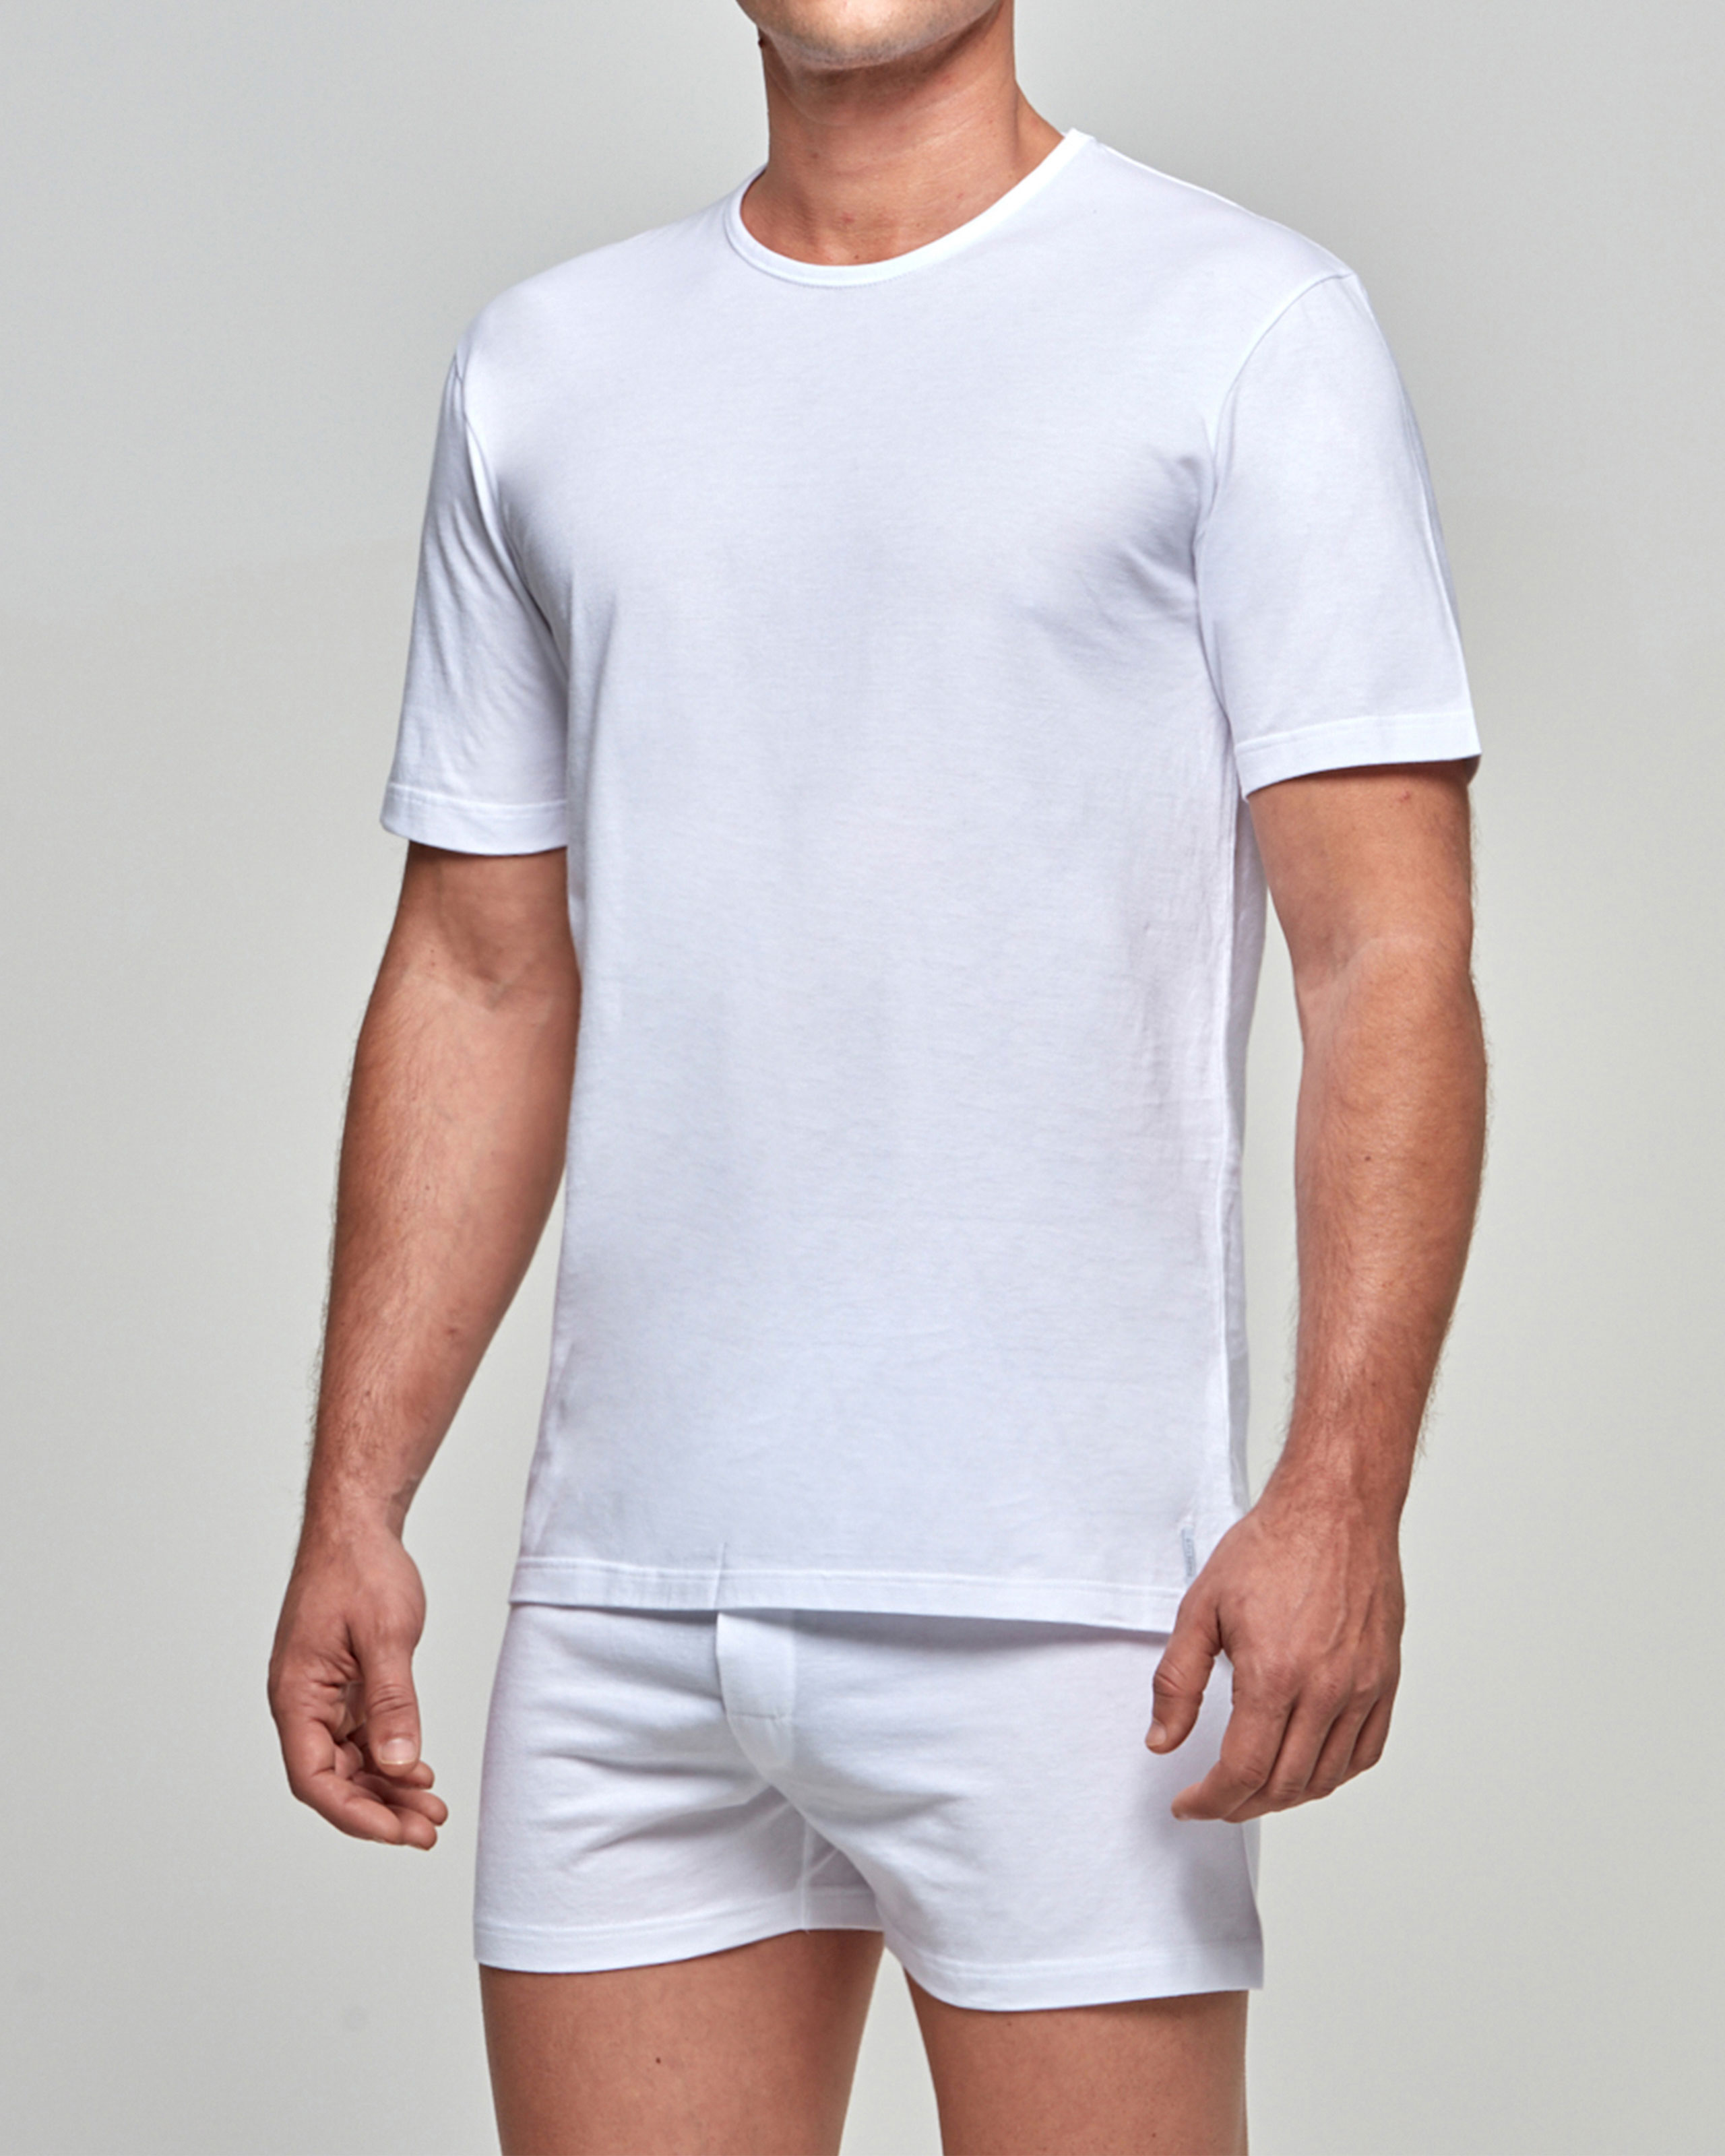 IMPETUS T-shirt de hombre Pure Cotton BLANCO